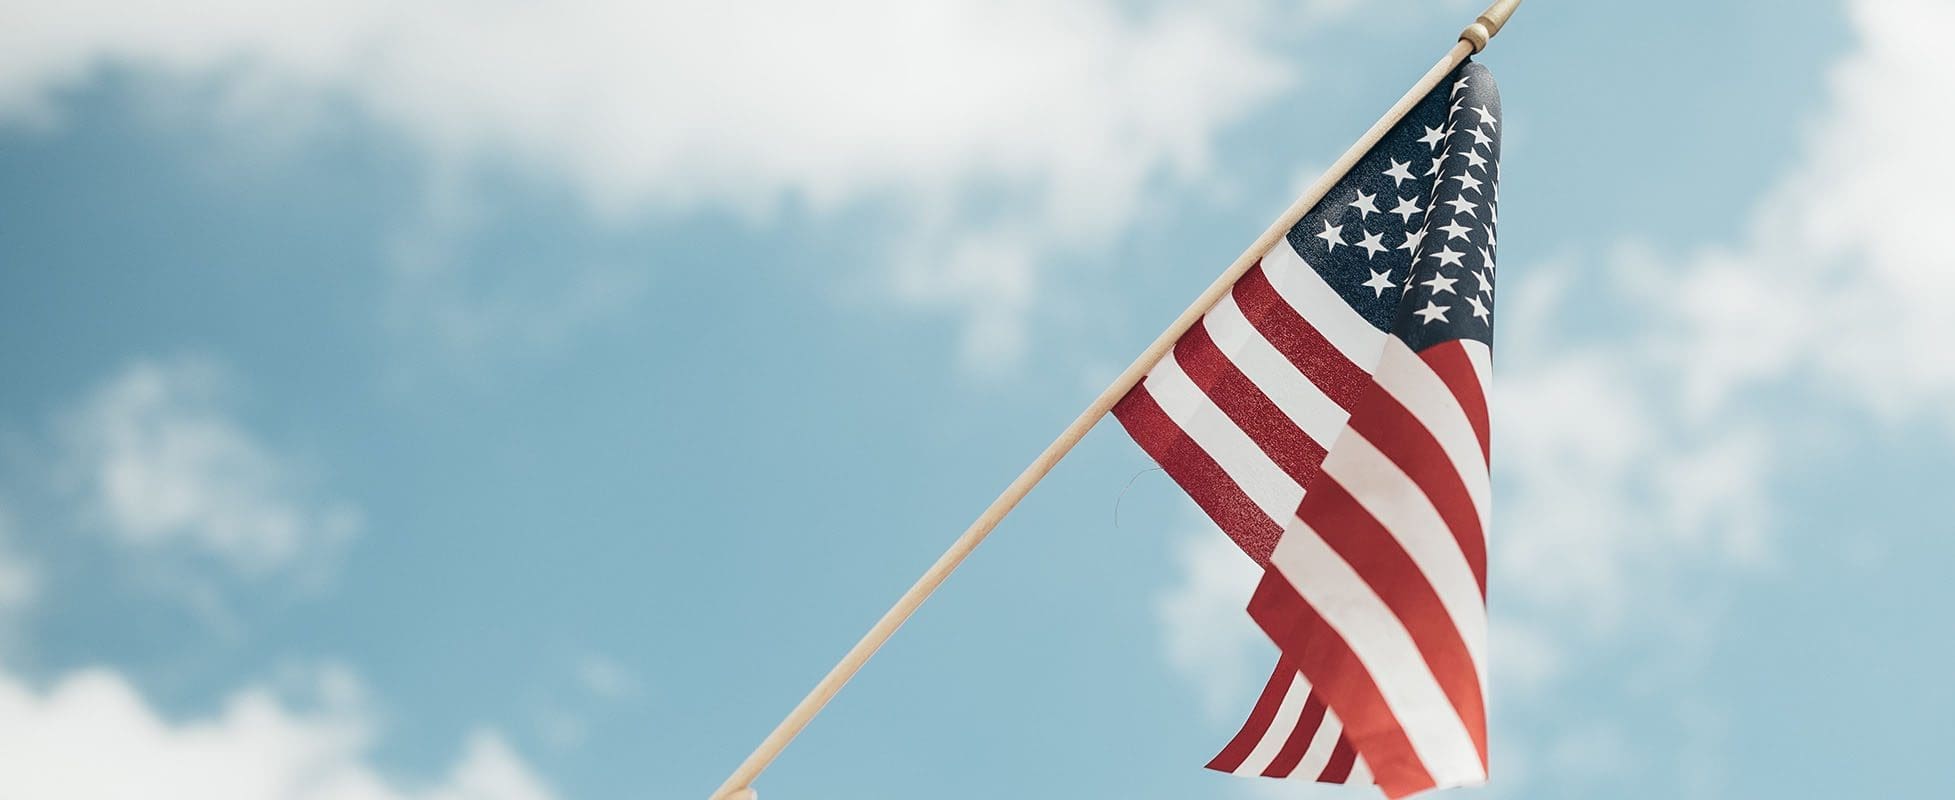 american flag waving in blue skies of summer